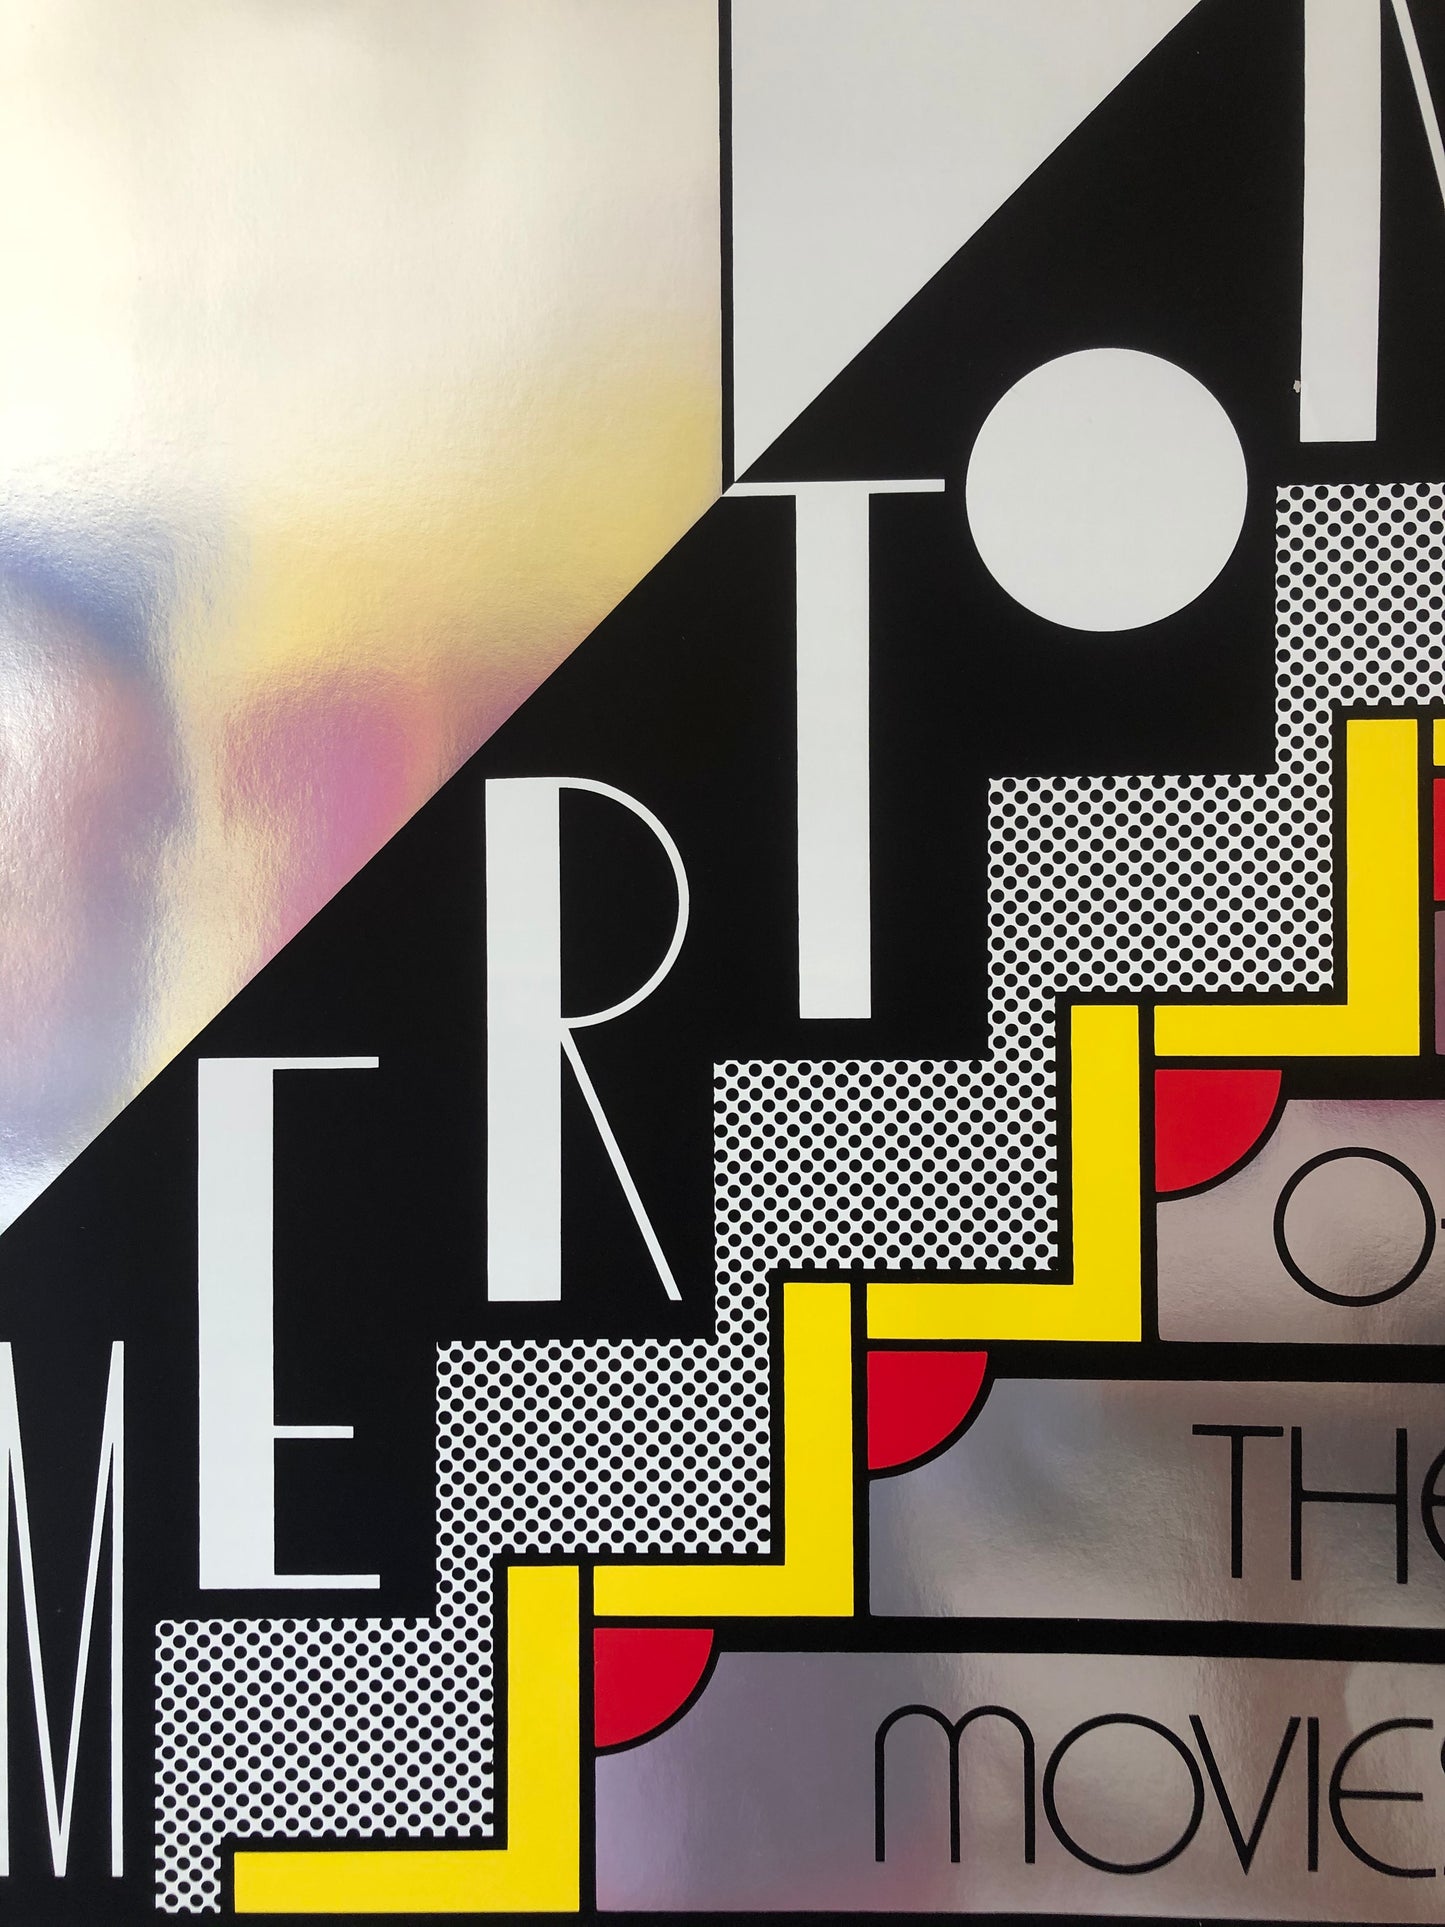 'Merton of the Movies' by Roy Lichtenstein